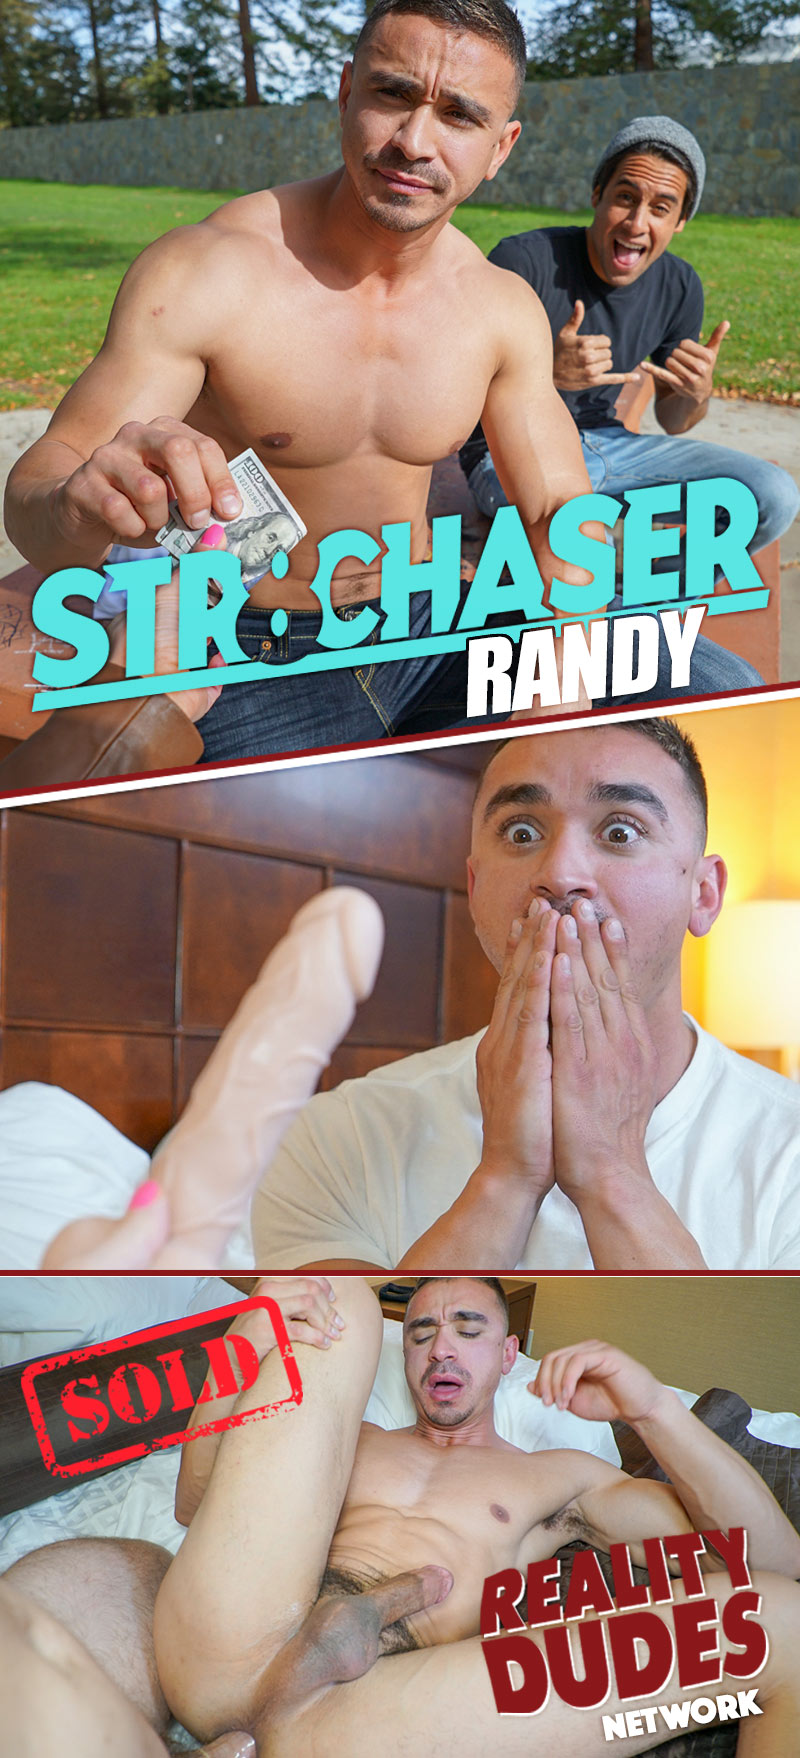 Randy dixon gay porn